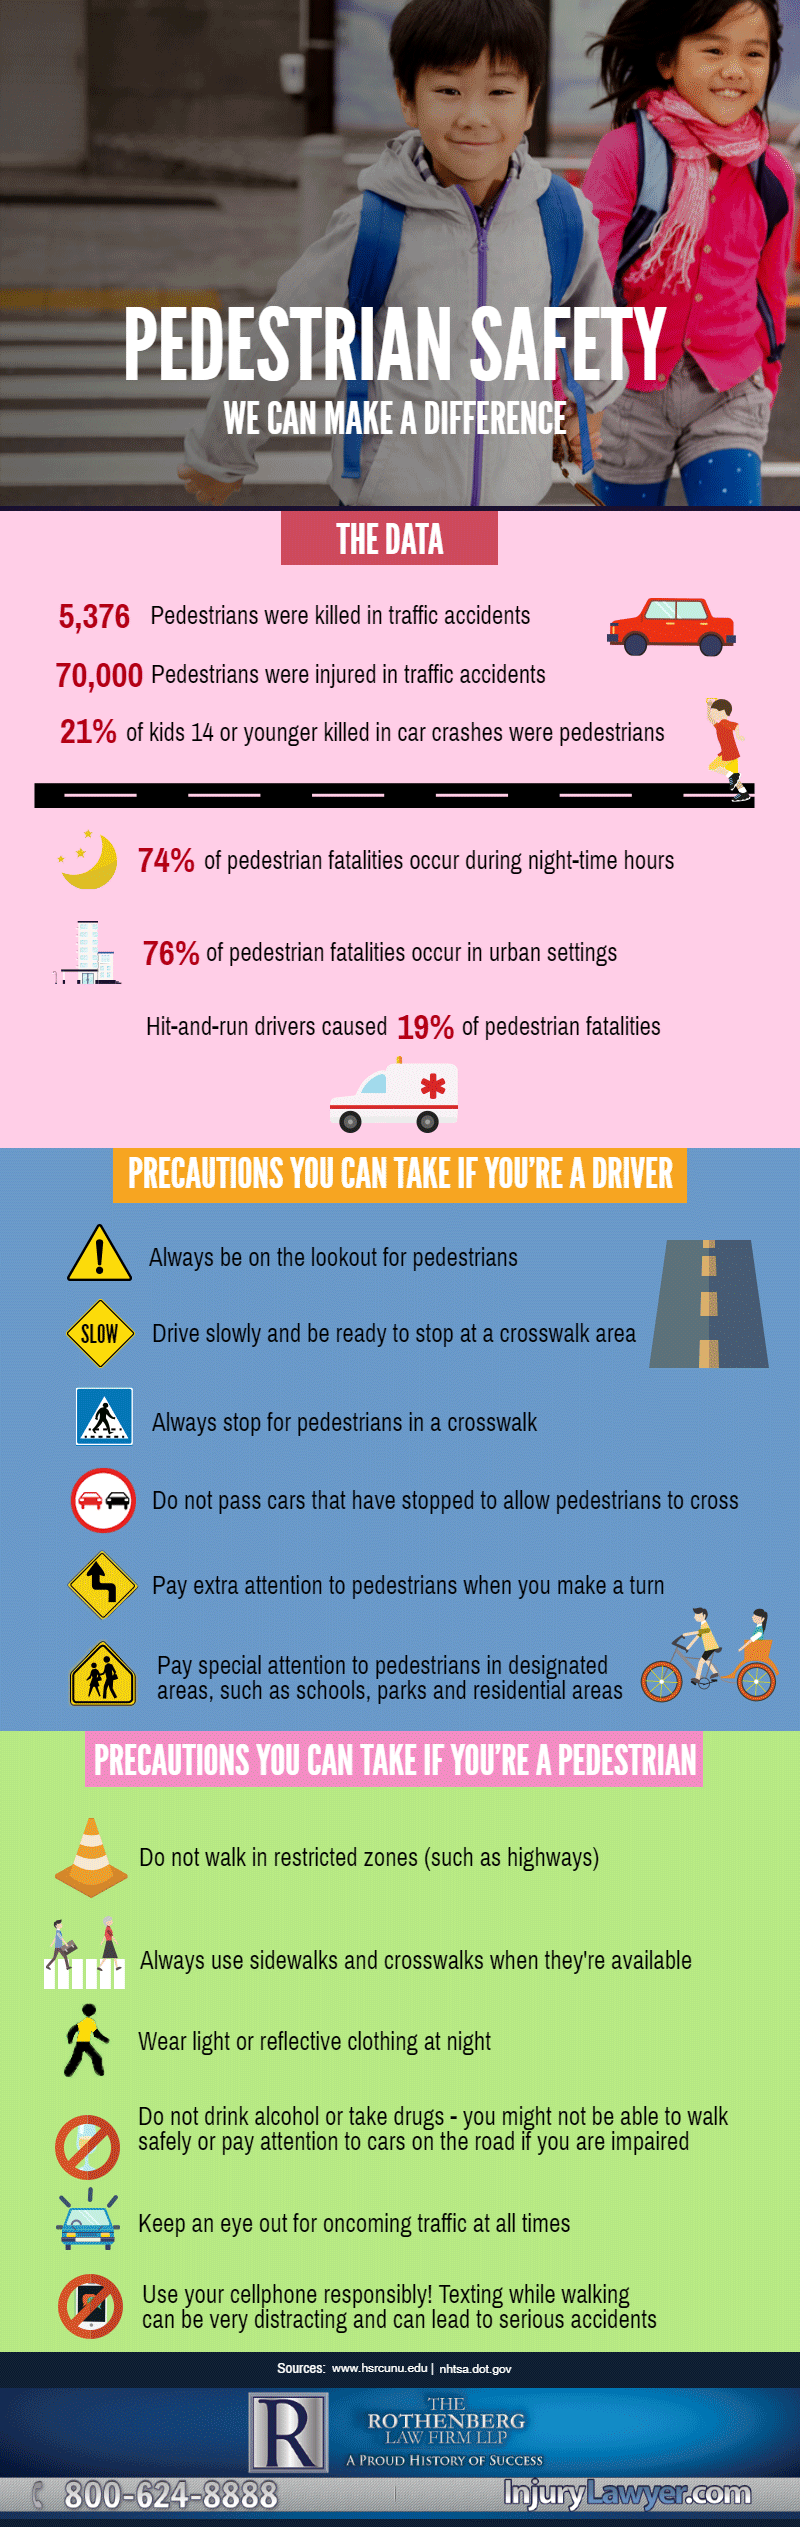 2017_Pedestrian_Safety_Infographic